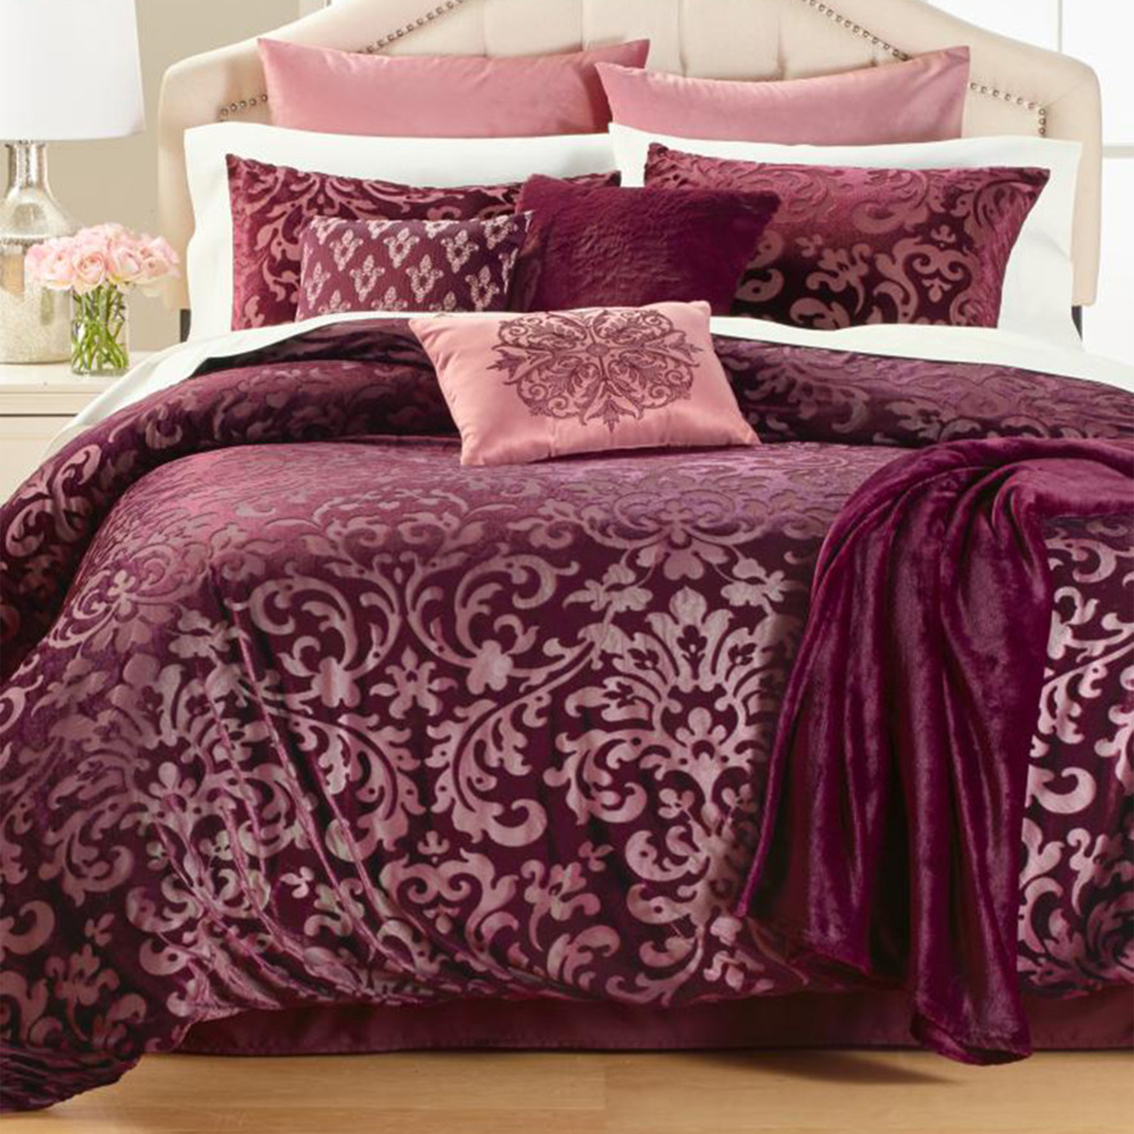 Pc King Comforter Set Bedding Sets, Martha Stewart Bed In A Bag King